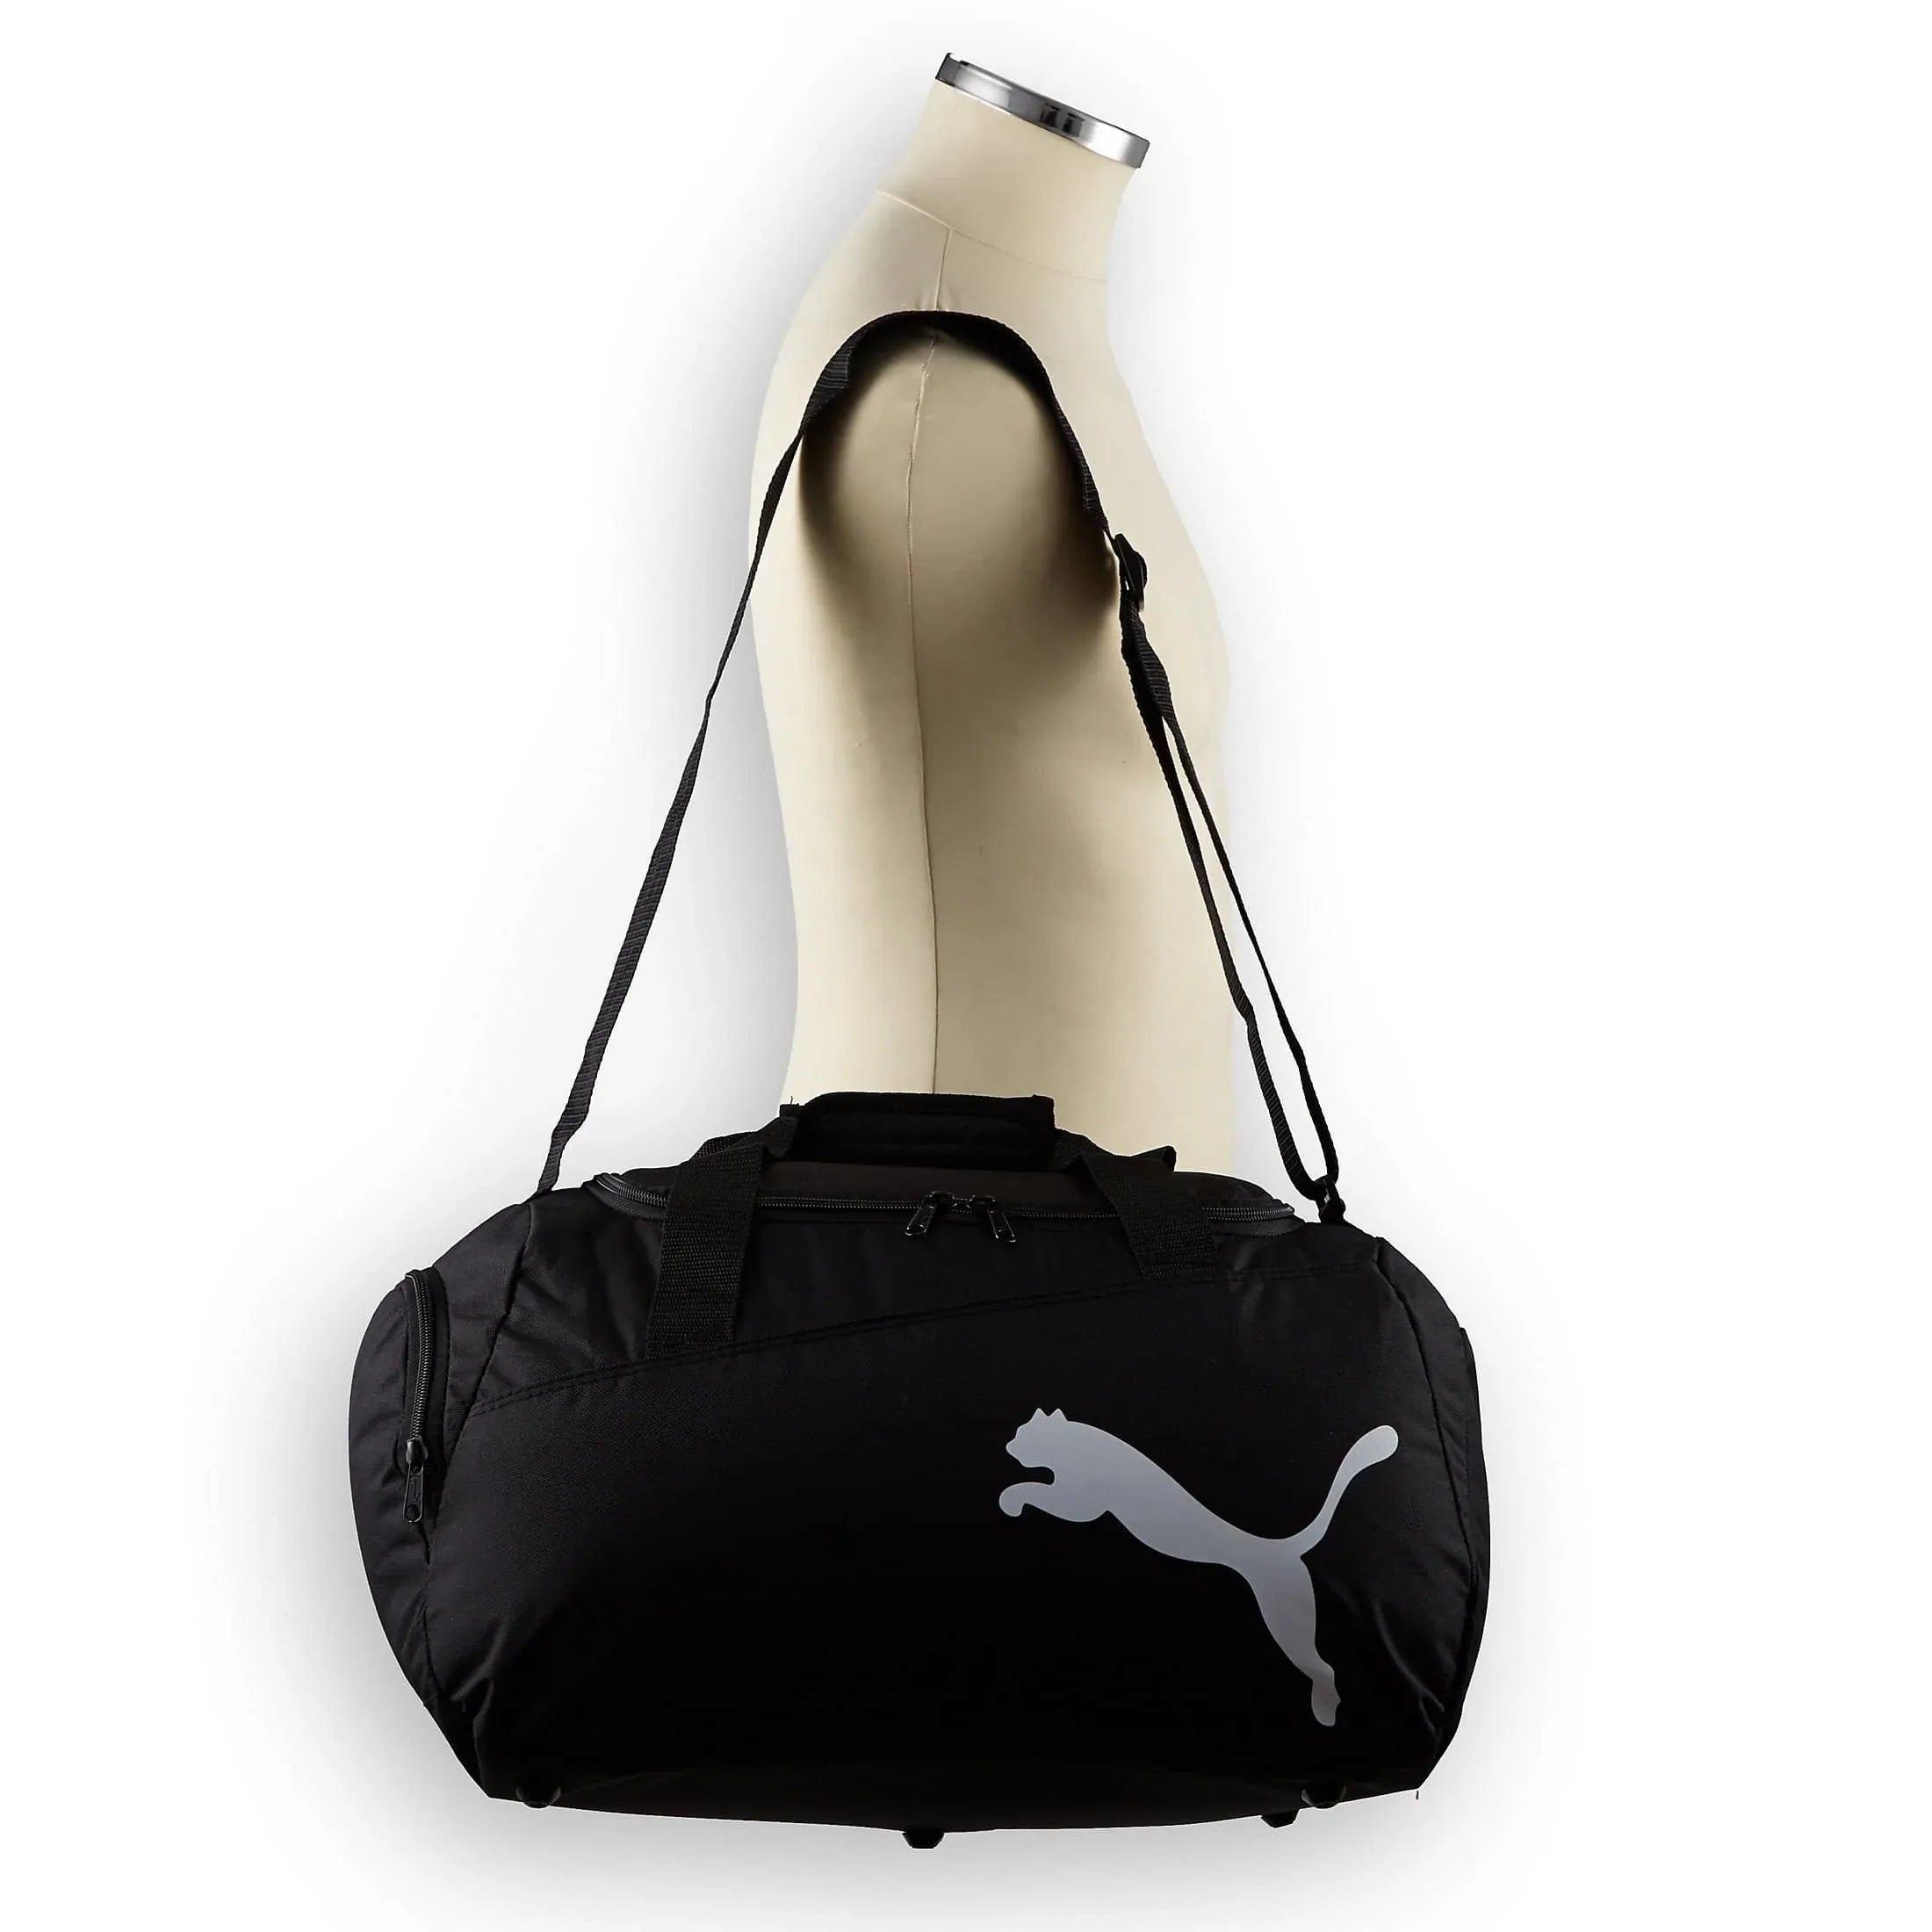 Puma Pro Training Small Bag sports bag 48 cm - black-puma royal-white